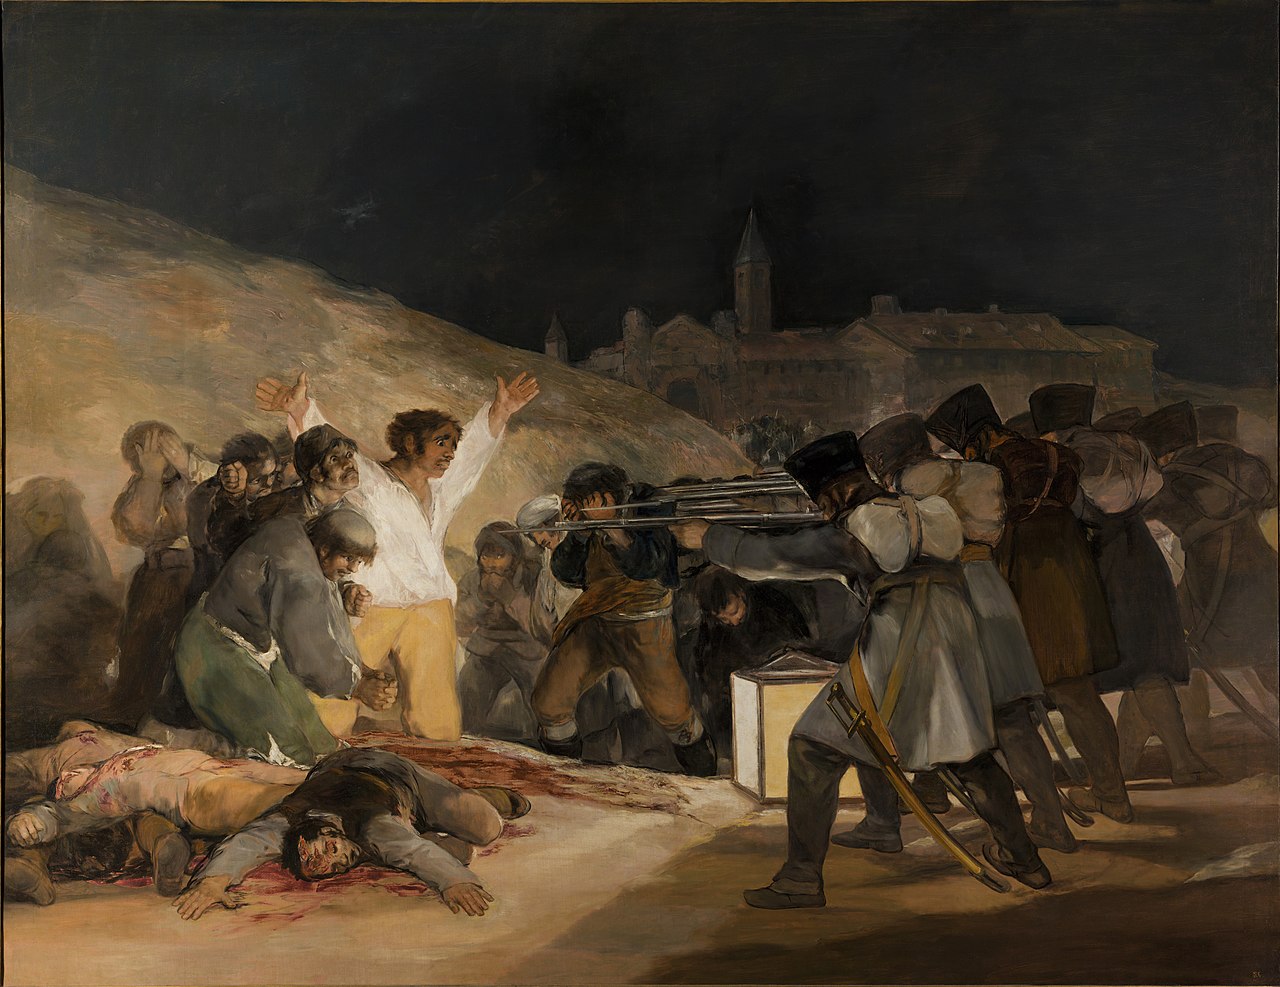 El_Tres_de_Mayo_by_Francisco_de_Goya_from_Prado